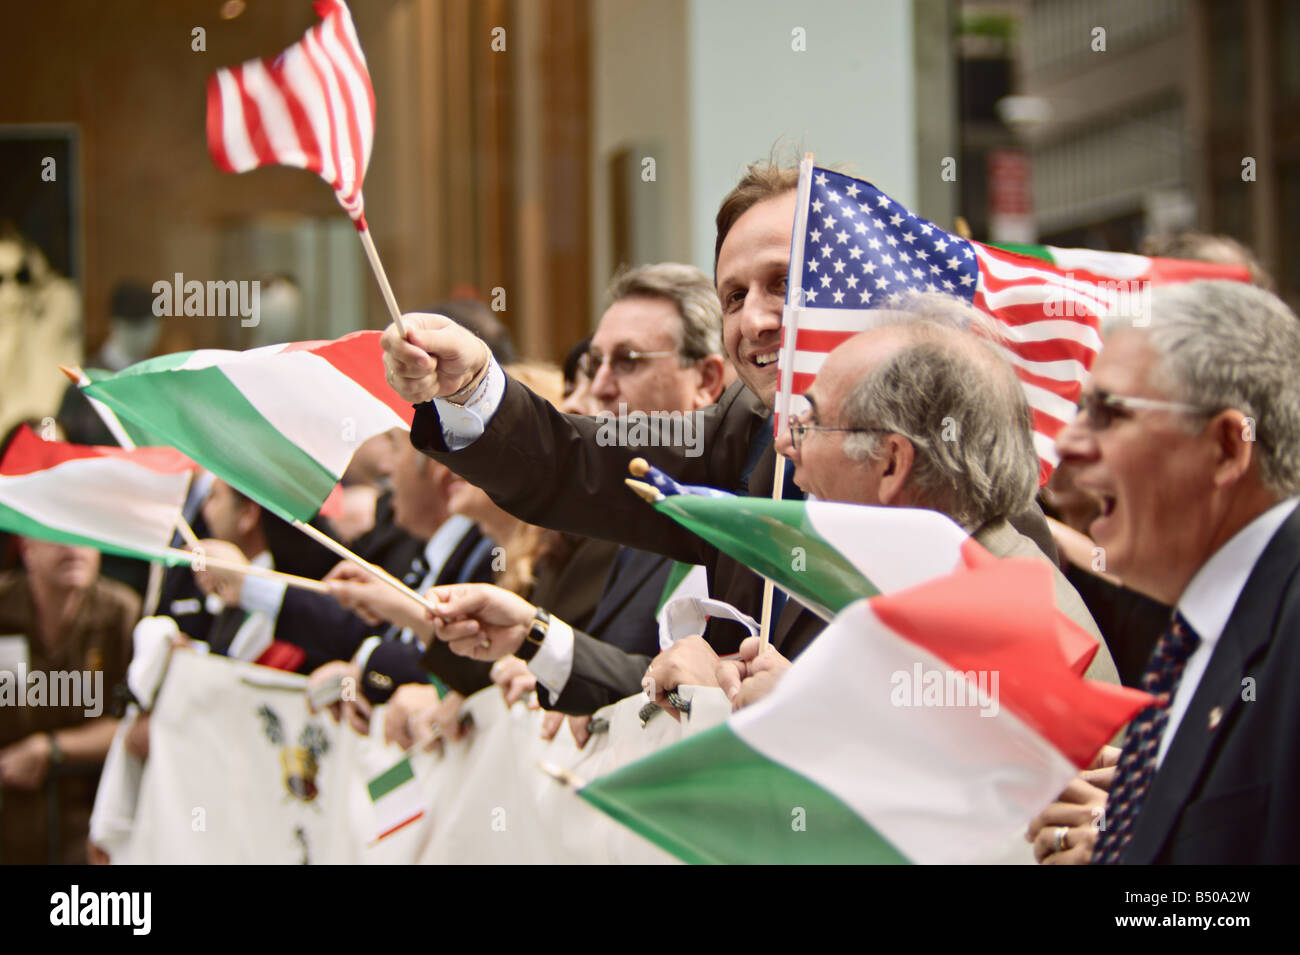 Brandissant groupe drapeaux américains et italiens en marchant en 2008 Columbus Day Parade New York New York États-Unis Banque D'Images